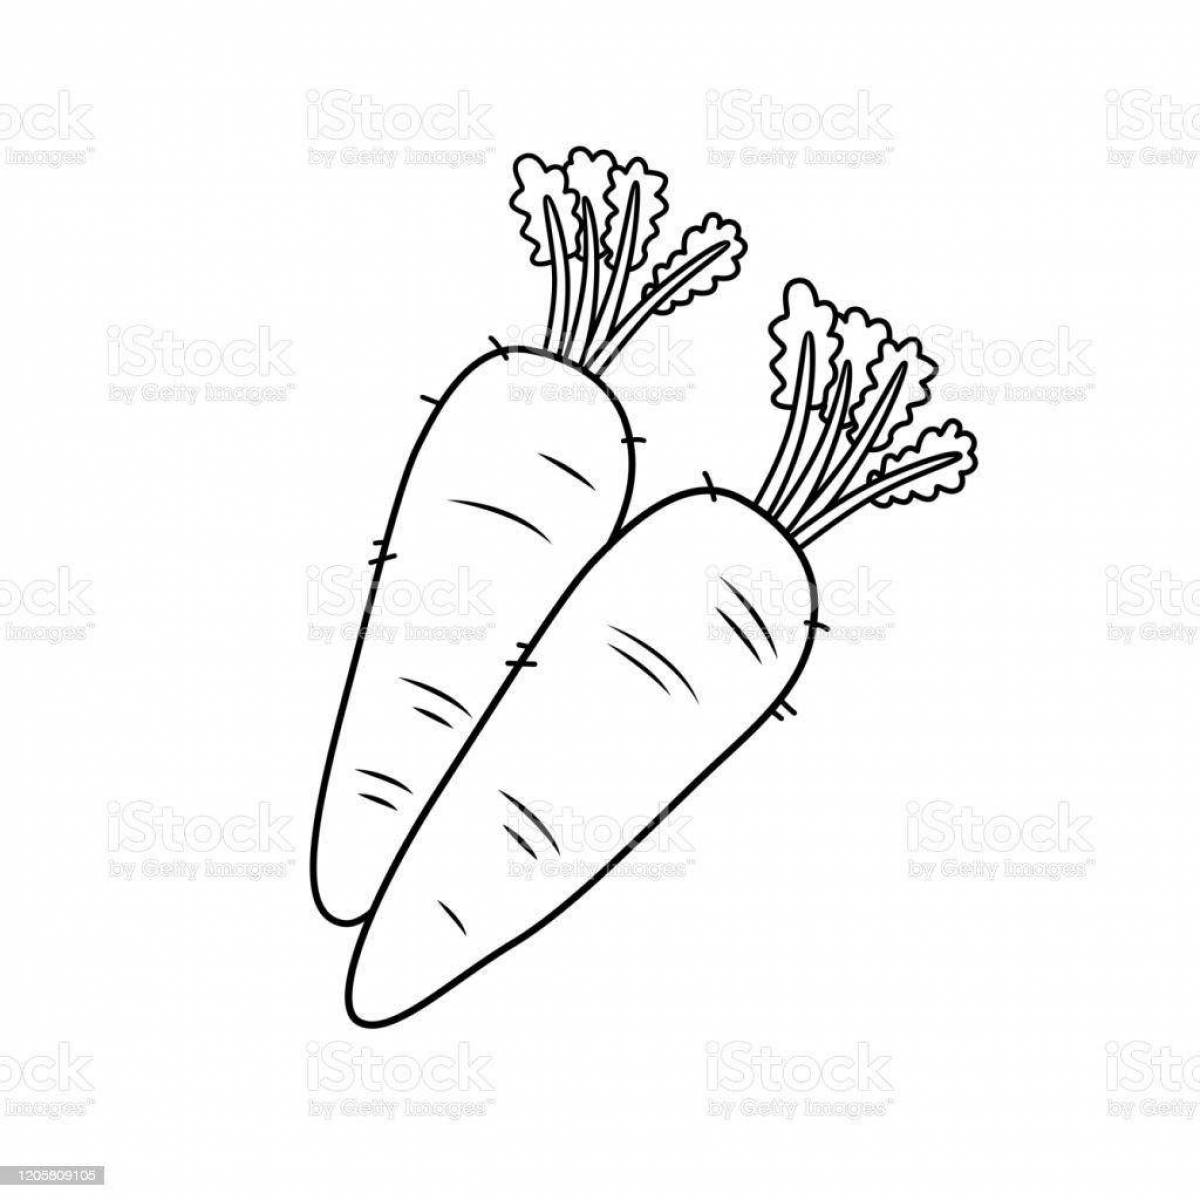 Раскраска игристая морковь для bunny 2 junior group